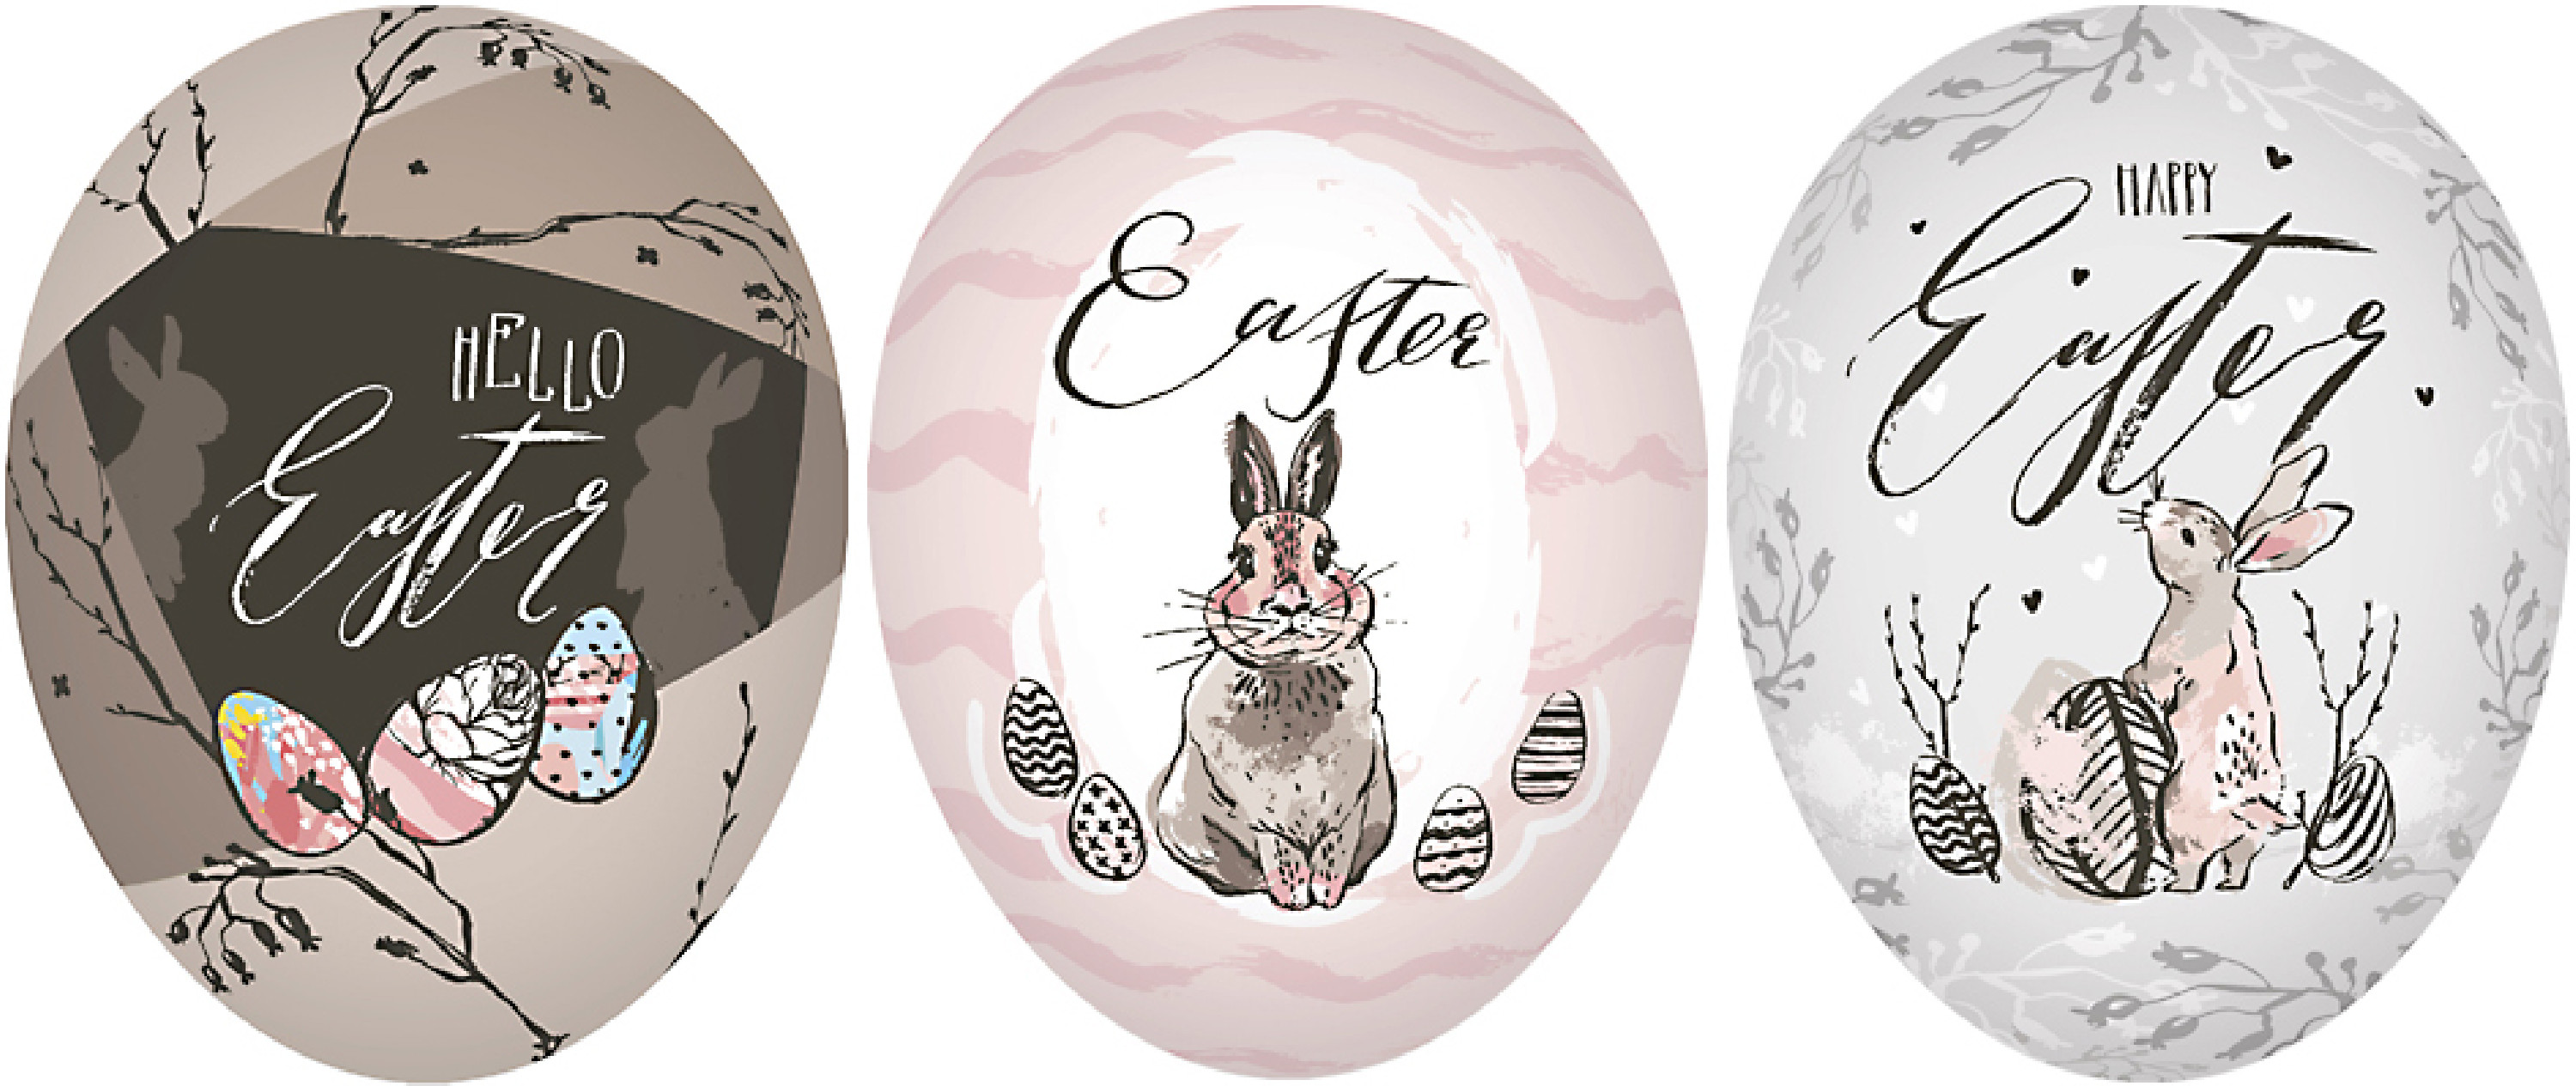 Ostereier 3er Set - Happy Easter II